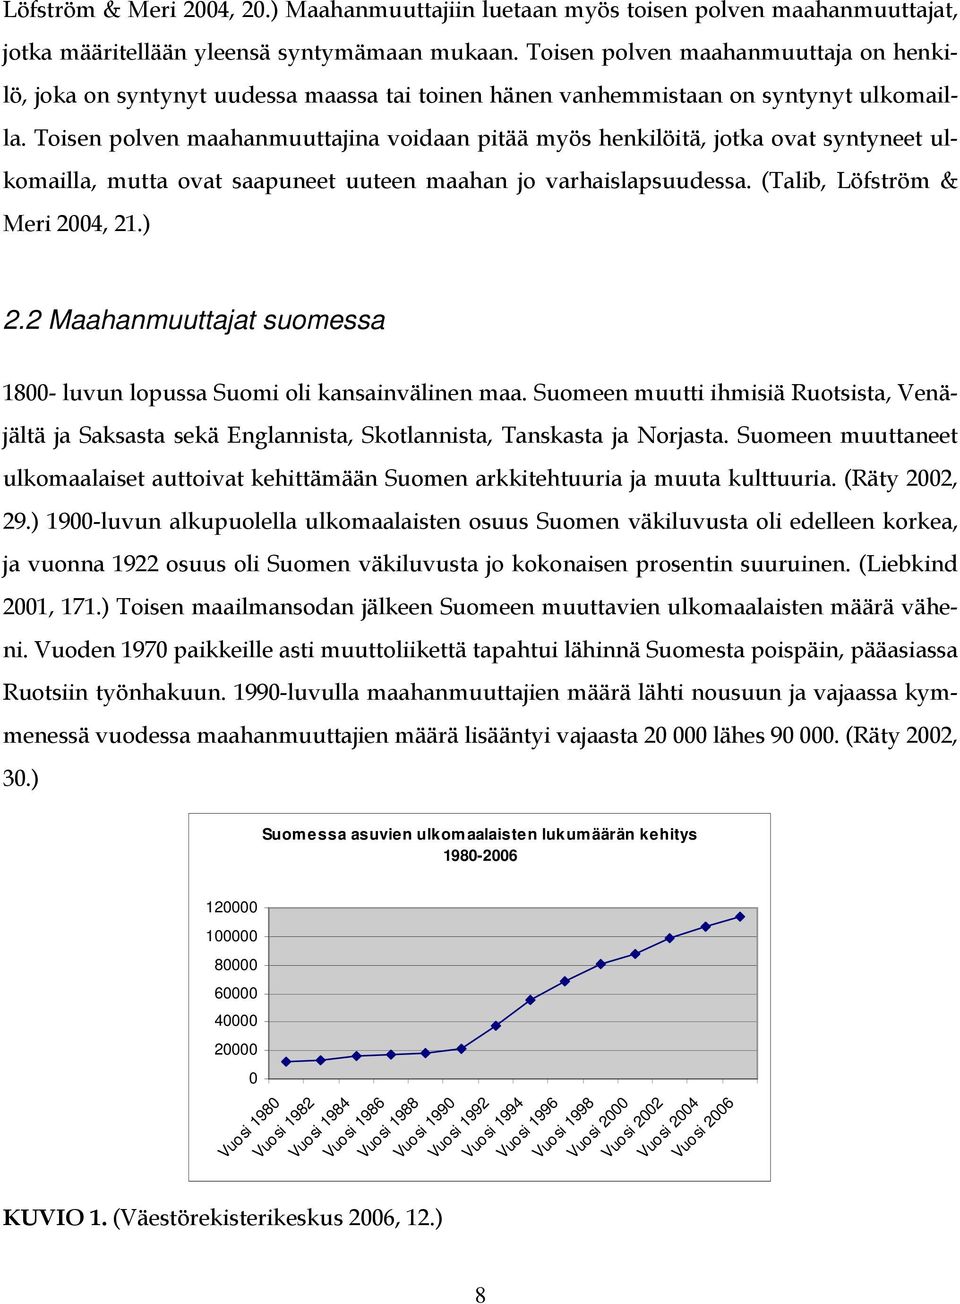 Toisen polven maahanmuuttajina voidaan pitää myös henkilöitä, jotka ovat syntyneet ulkomailla, mutta ovat saapuneet uuteen maahan jo varhaislapsuudessa. (Talib, Löfström & Meri 2004, 21.) 2.